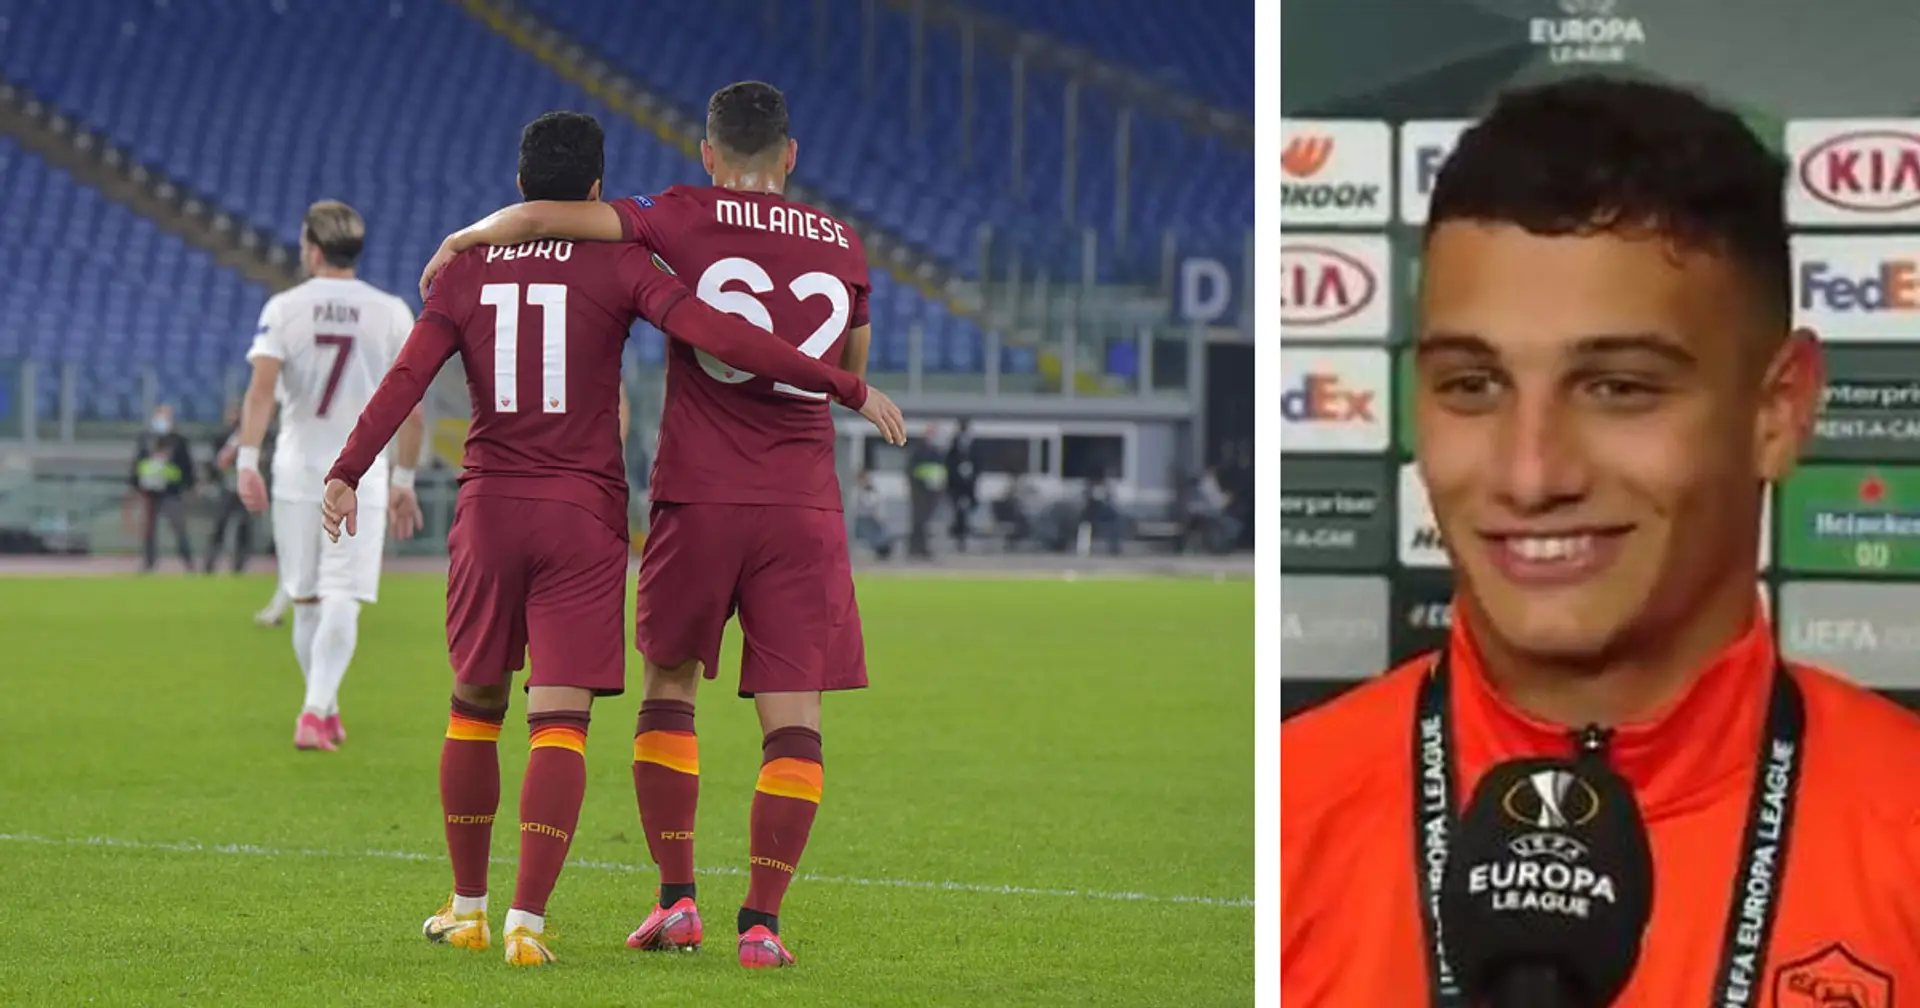 "Non penso che stasera riuscirò a dormire": Milanese racconta il suo esordio emozionante con la maglia della Magica